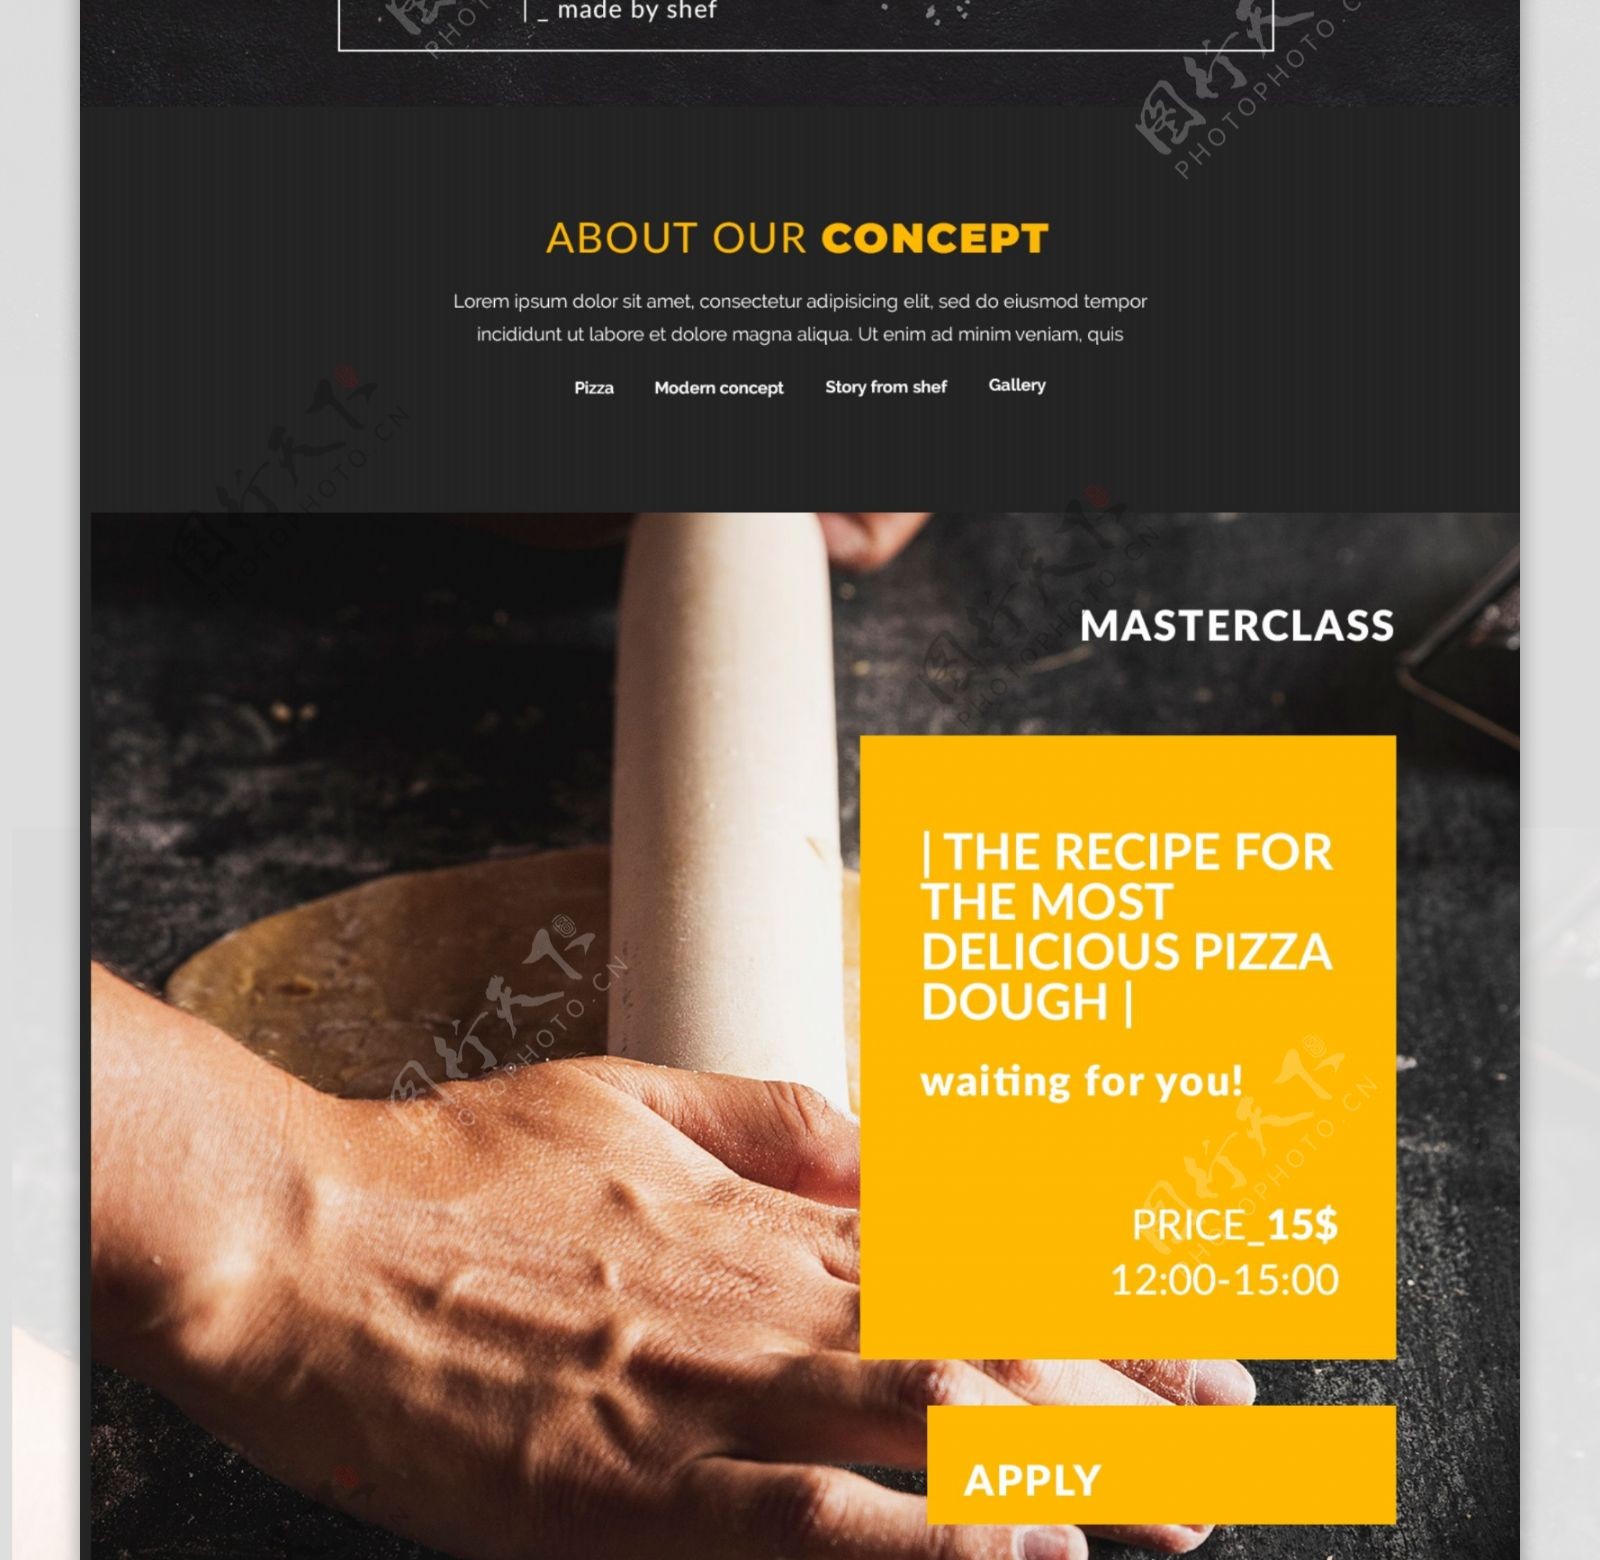 披萨美食网页界面